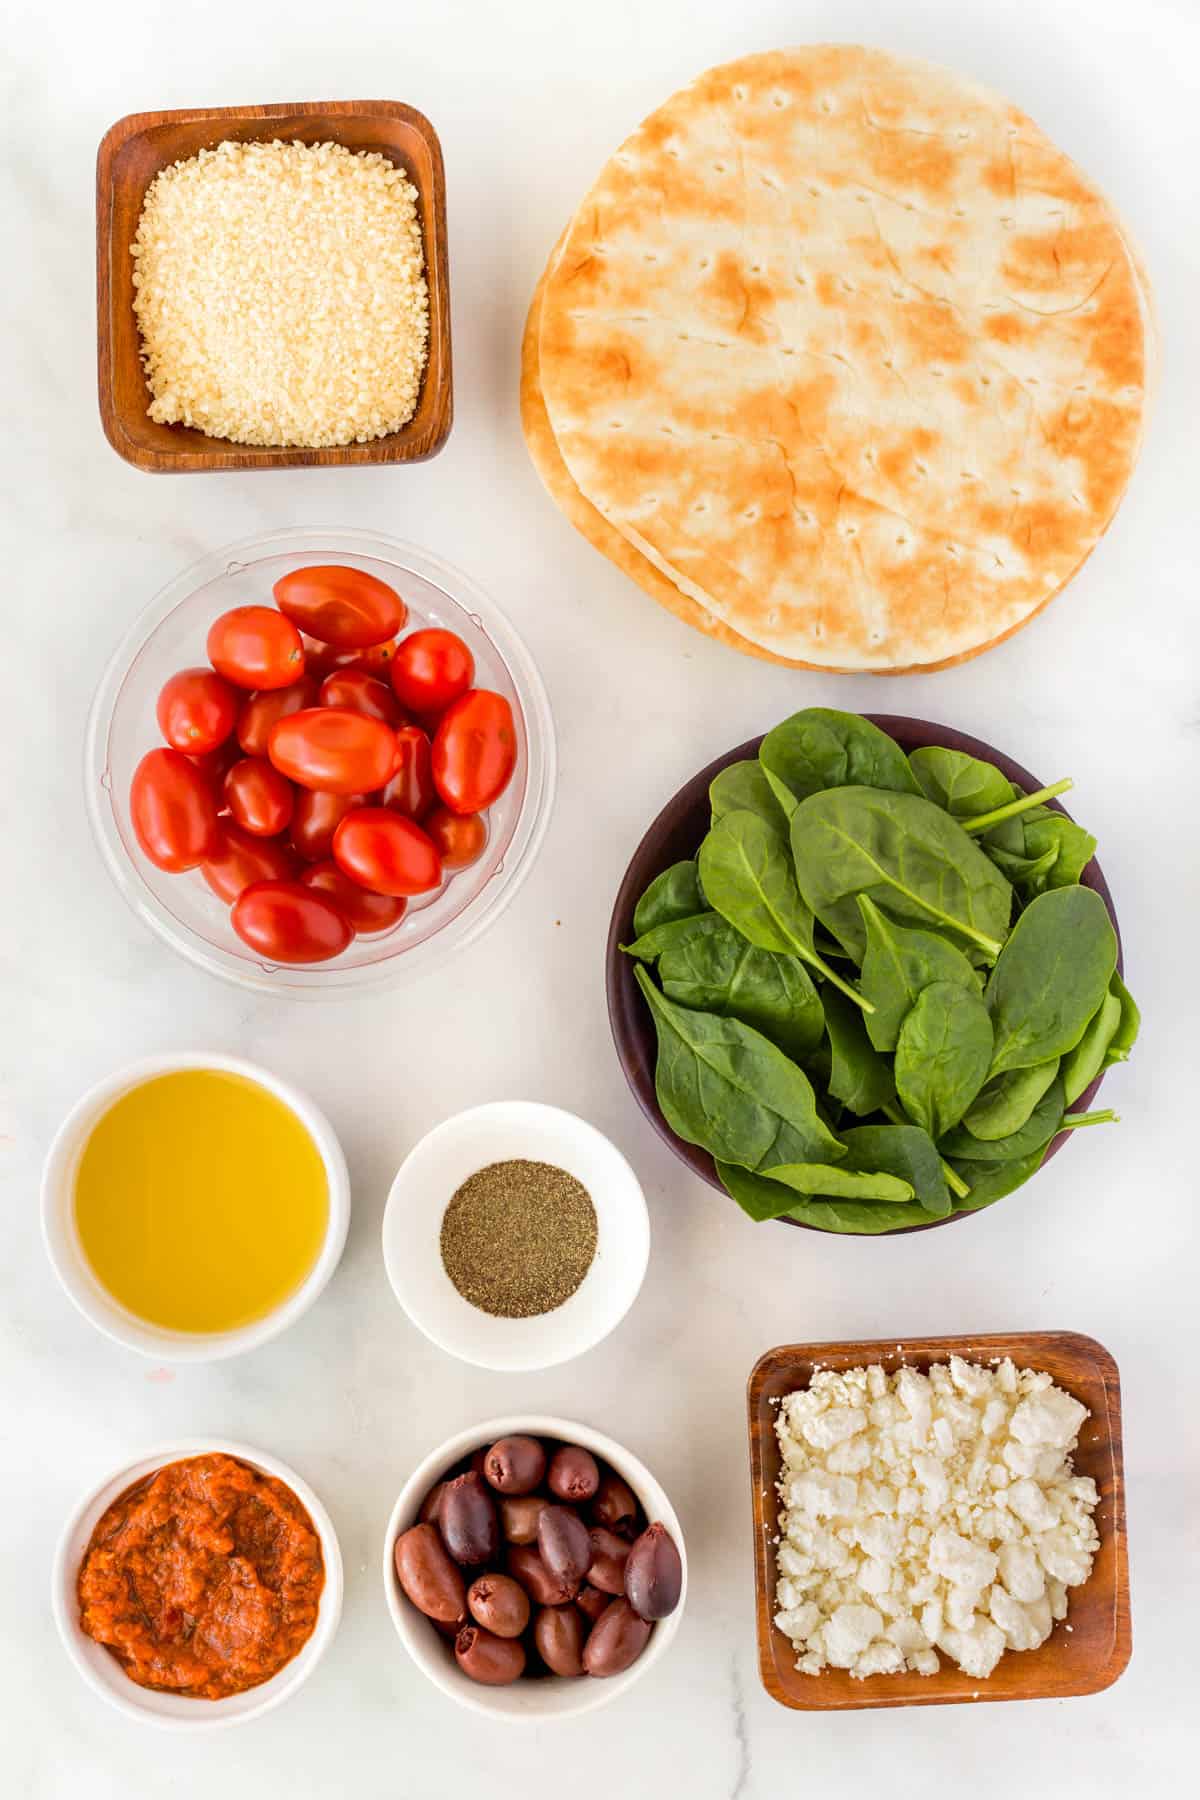 Ingredients for Sheet Pan Greek Pita Pizza